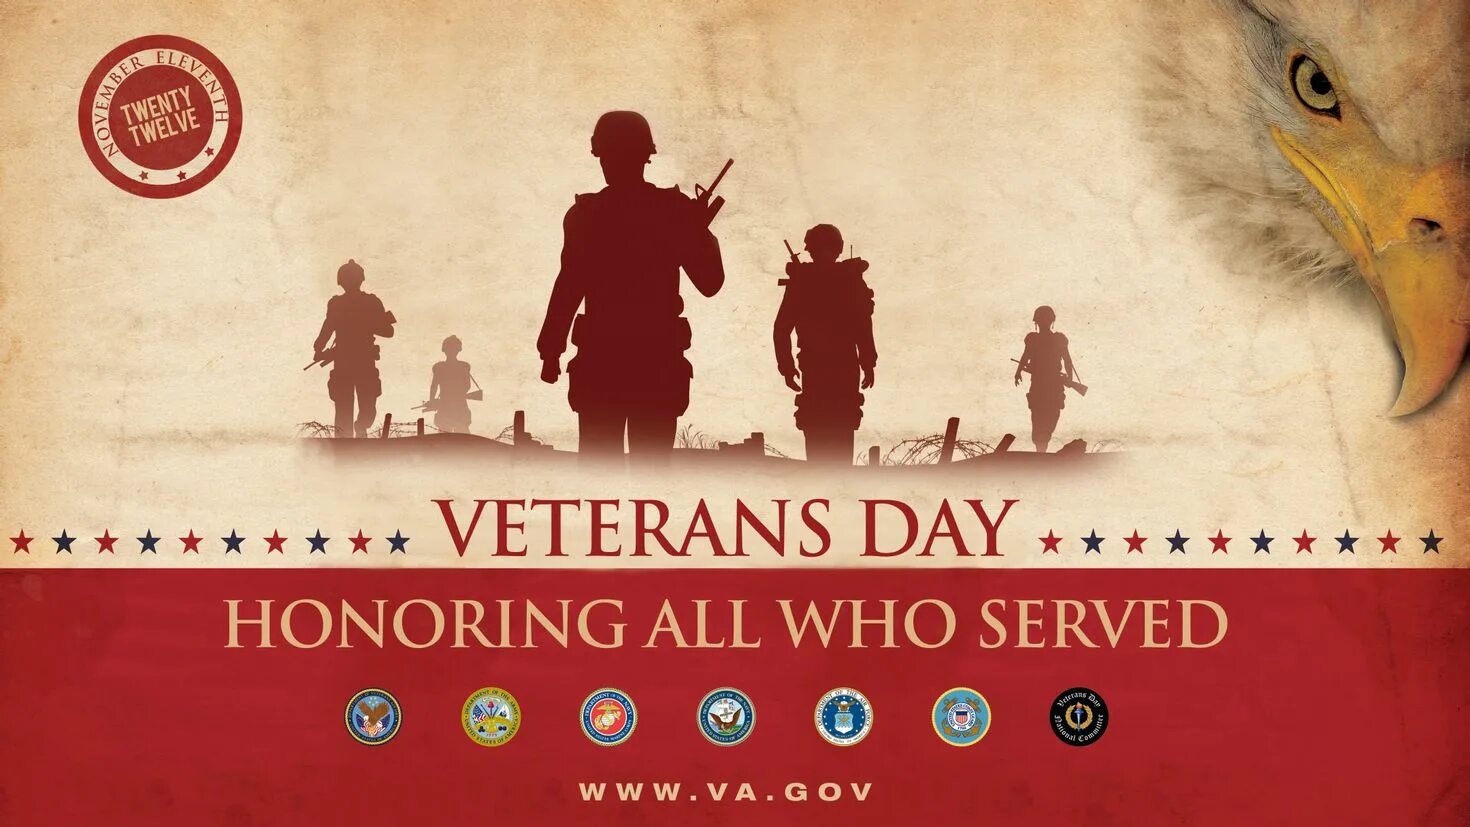 Veterans day. Veteran's Day. Happy veterans Day. День ветеранов в США. Veterans Day background.